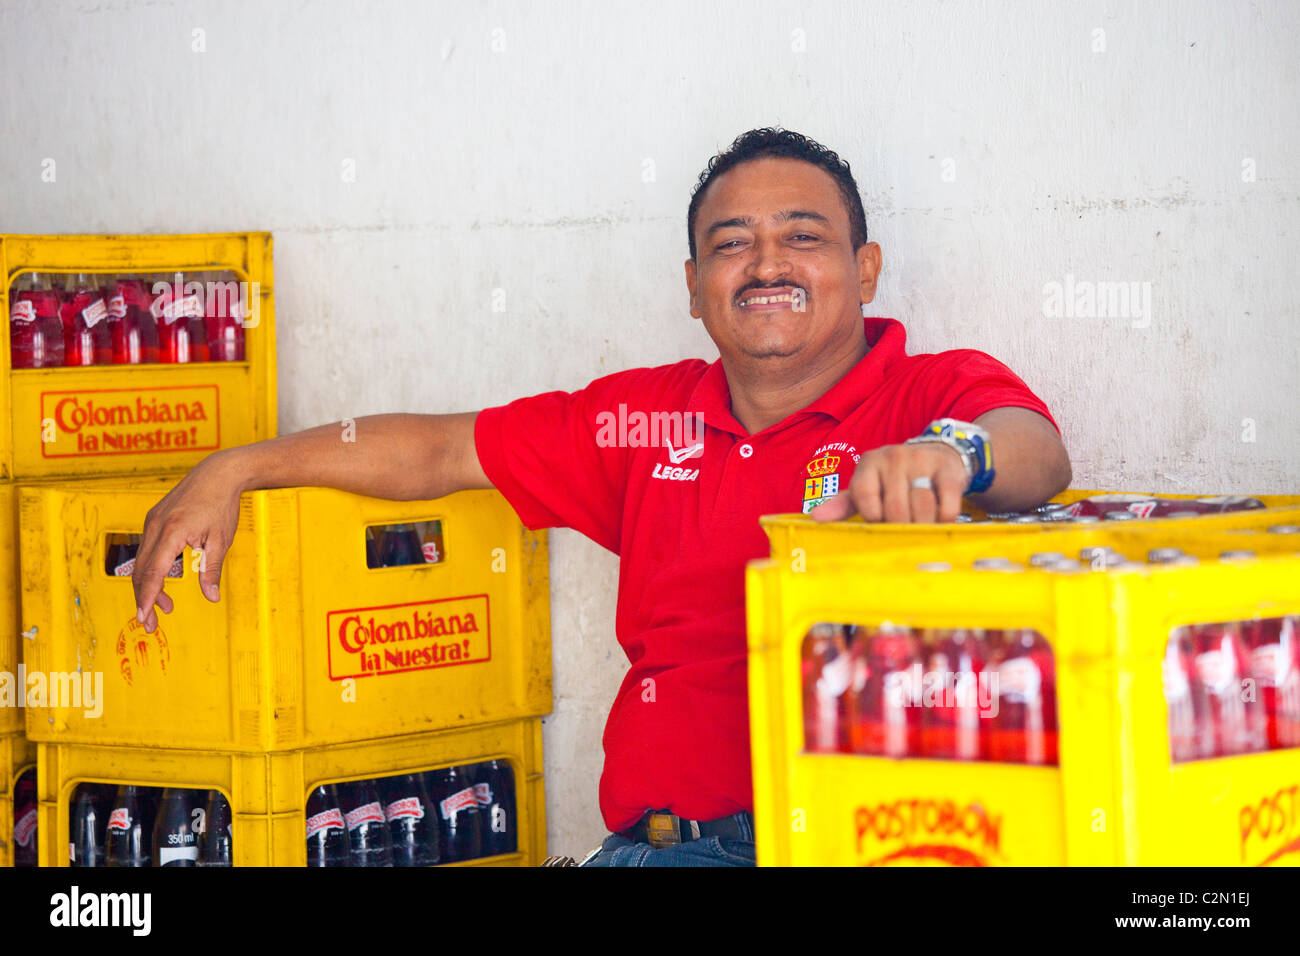 L'homme à un distributeur de boissons dans la région de Carthagène, Colombie Banque D'Images